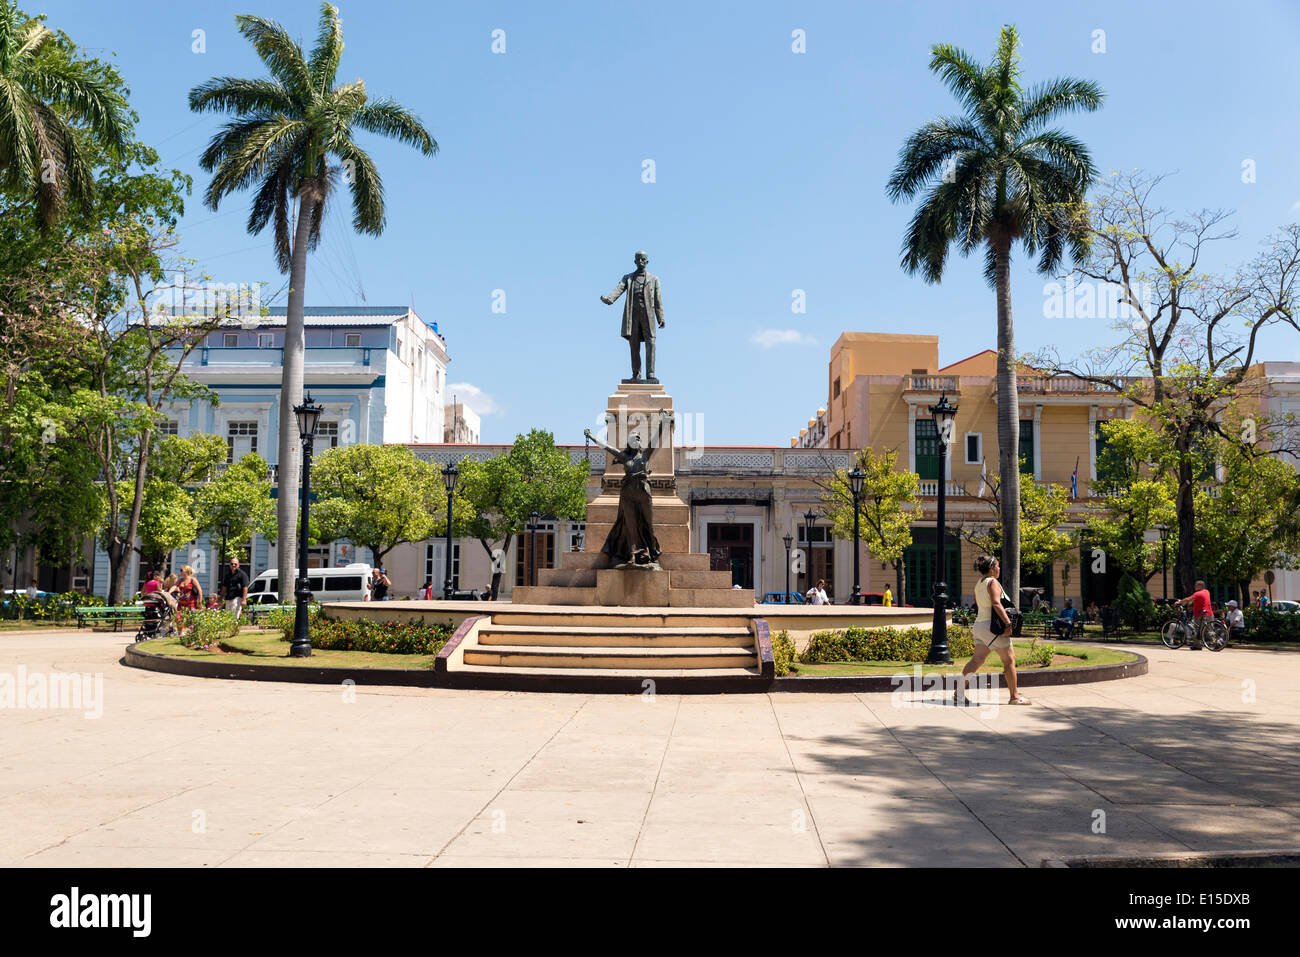 Matanzas, Cuba - piazza principale. Le palme e la statua raffigurante Jose Marti e libertà. Foto Stock